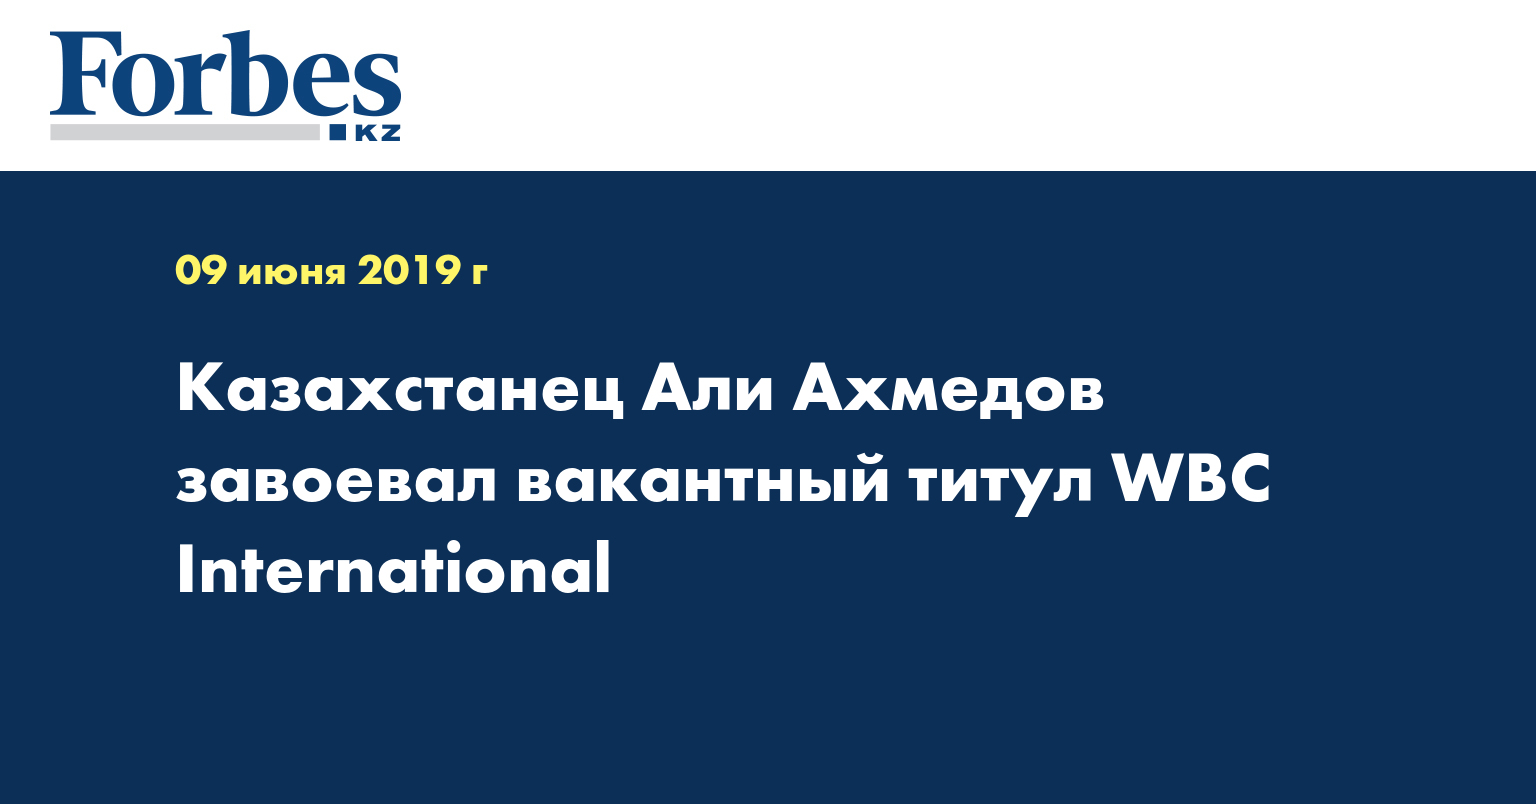 Казахстанец Али Ахмедов завоевал вакантный титул WBC International  